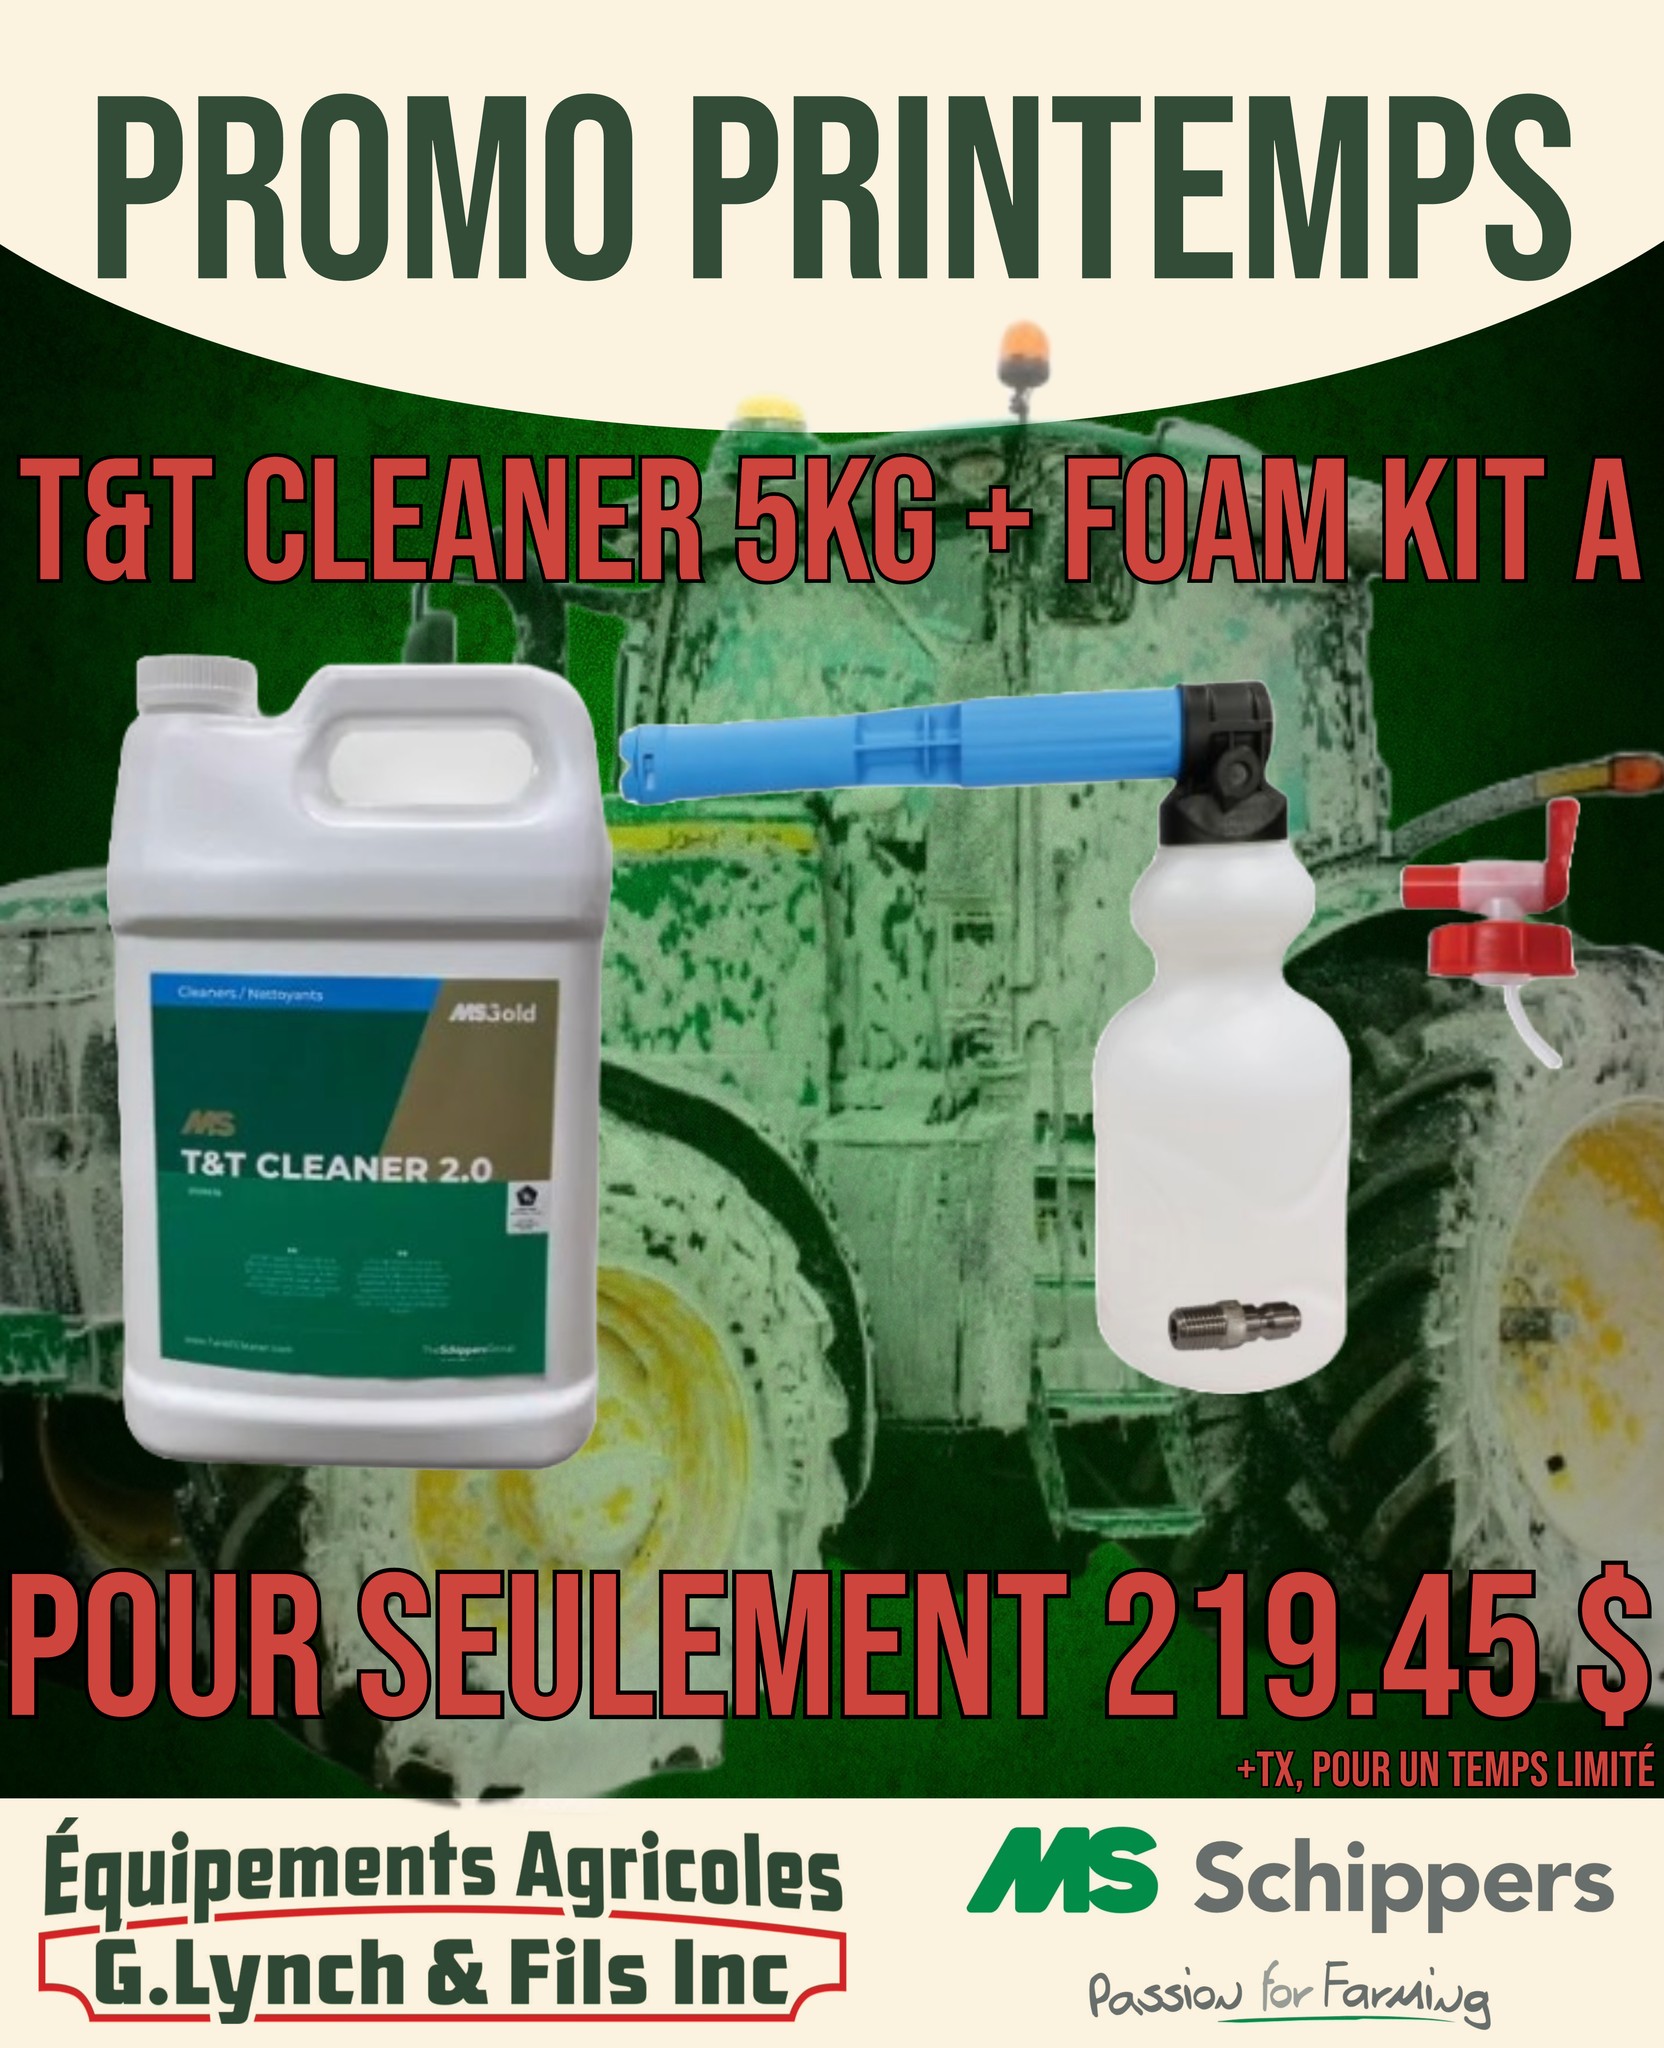   T&T Cleaner + foam kit A